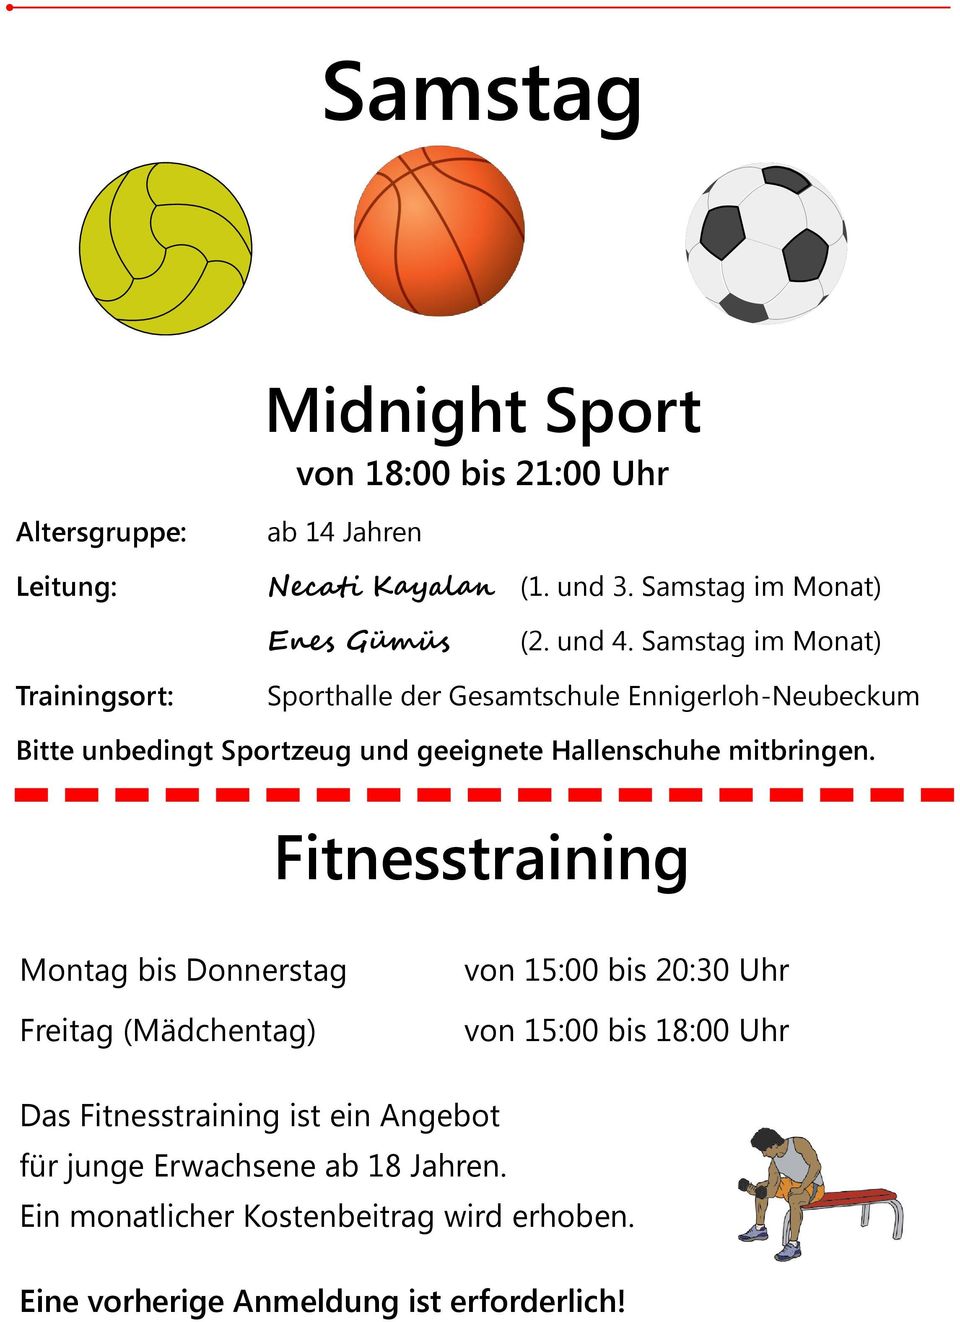 Samstag im Monat) Trainingsort: Sporthalle der Gesamtschule Ennigerloh-Neubeckum Bitte unbedingt Sportzeug und geeignete Hallenschuhe